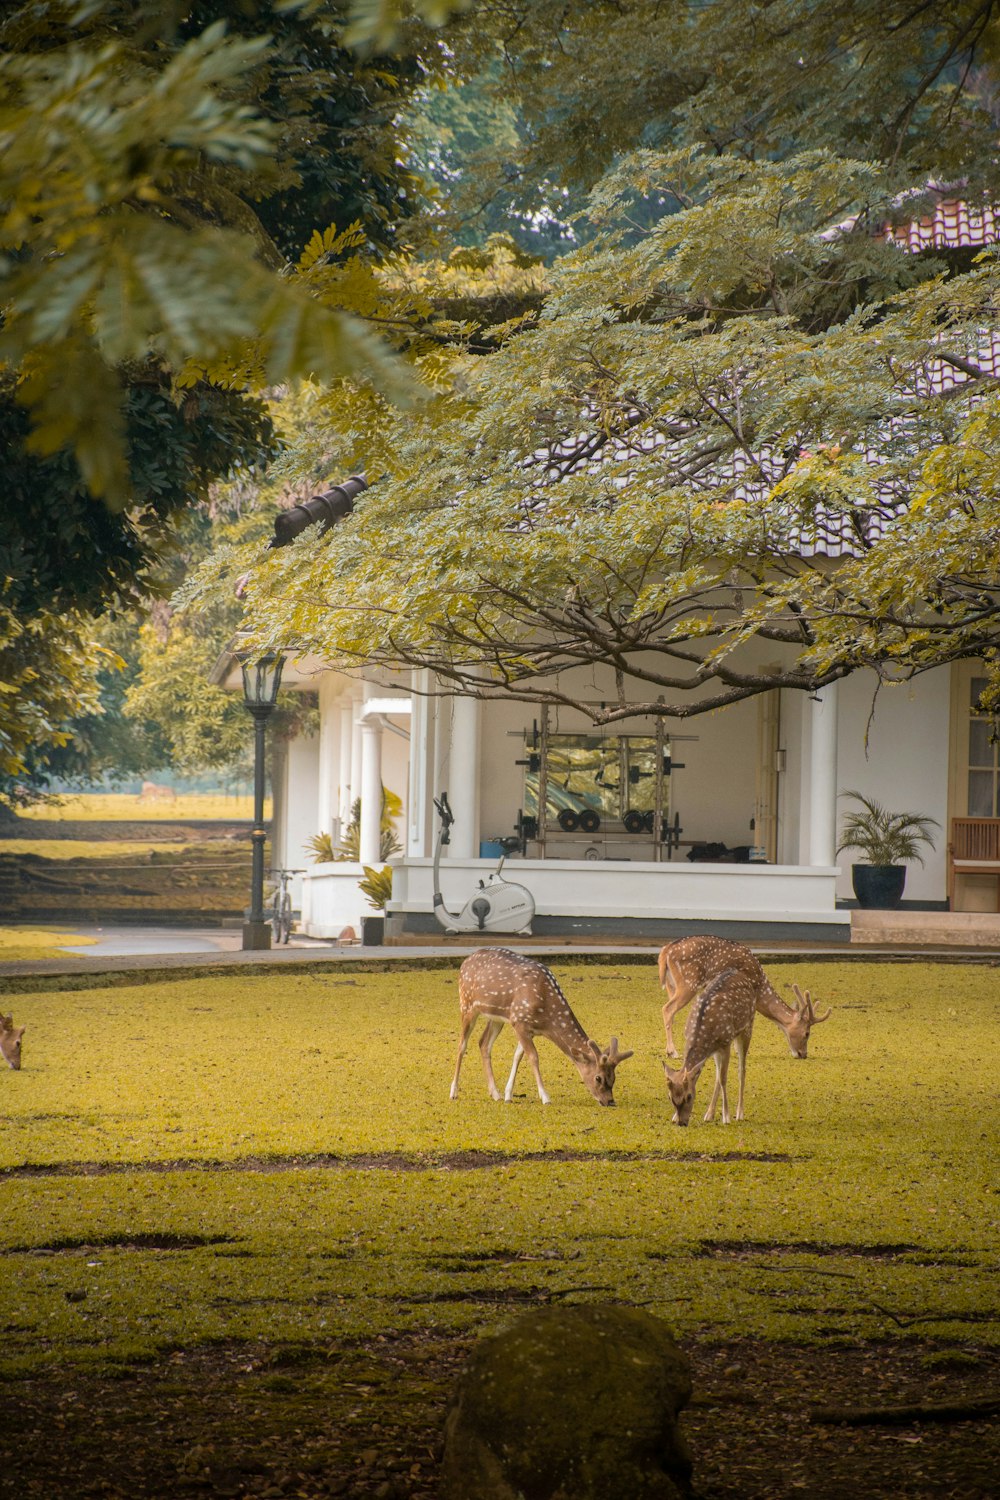 giraffes grazing in a park